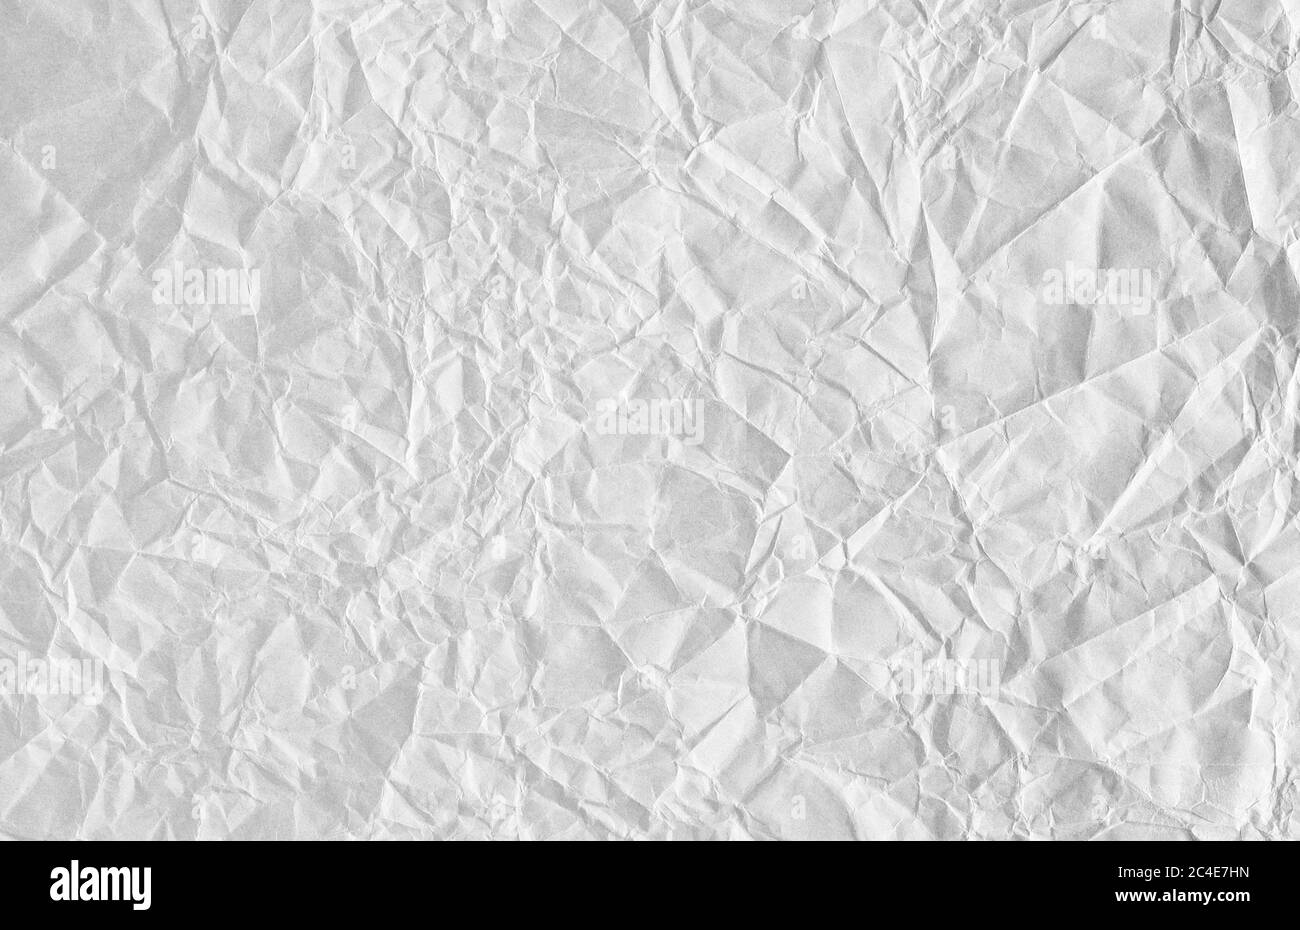 Lo sfondo è bianco. Consistenza della carta con pieghe e ammaccature, vecchia e dilatata. Foto Stock